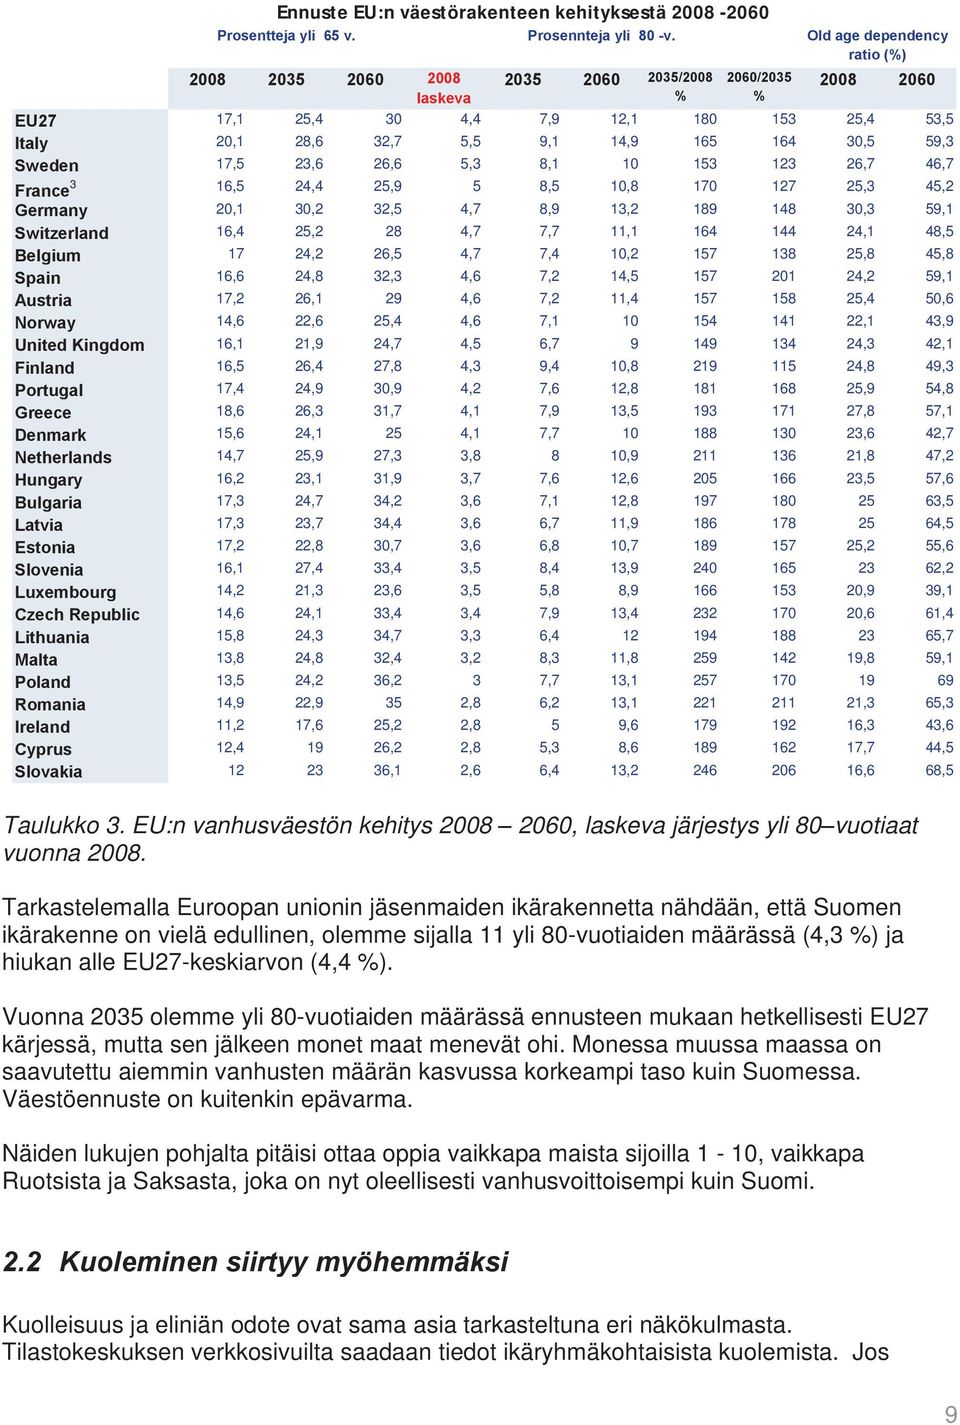 Tarkastelemalla Euroopan unionin jäsenmaiden ikärakennetta nähdään, että Suomen ikärakenne on vielä edullinen, olemme sijalla 11 yli 80-vuotiaiden määrässä (4,3 %) ja hiukan alle EU27-keskiarvon (4,4